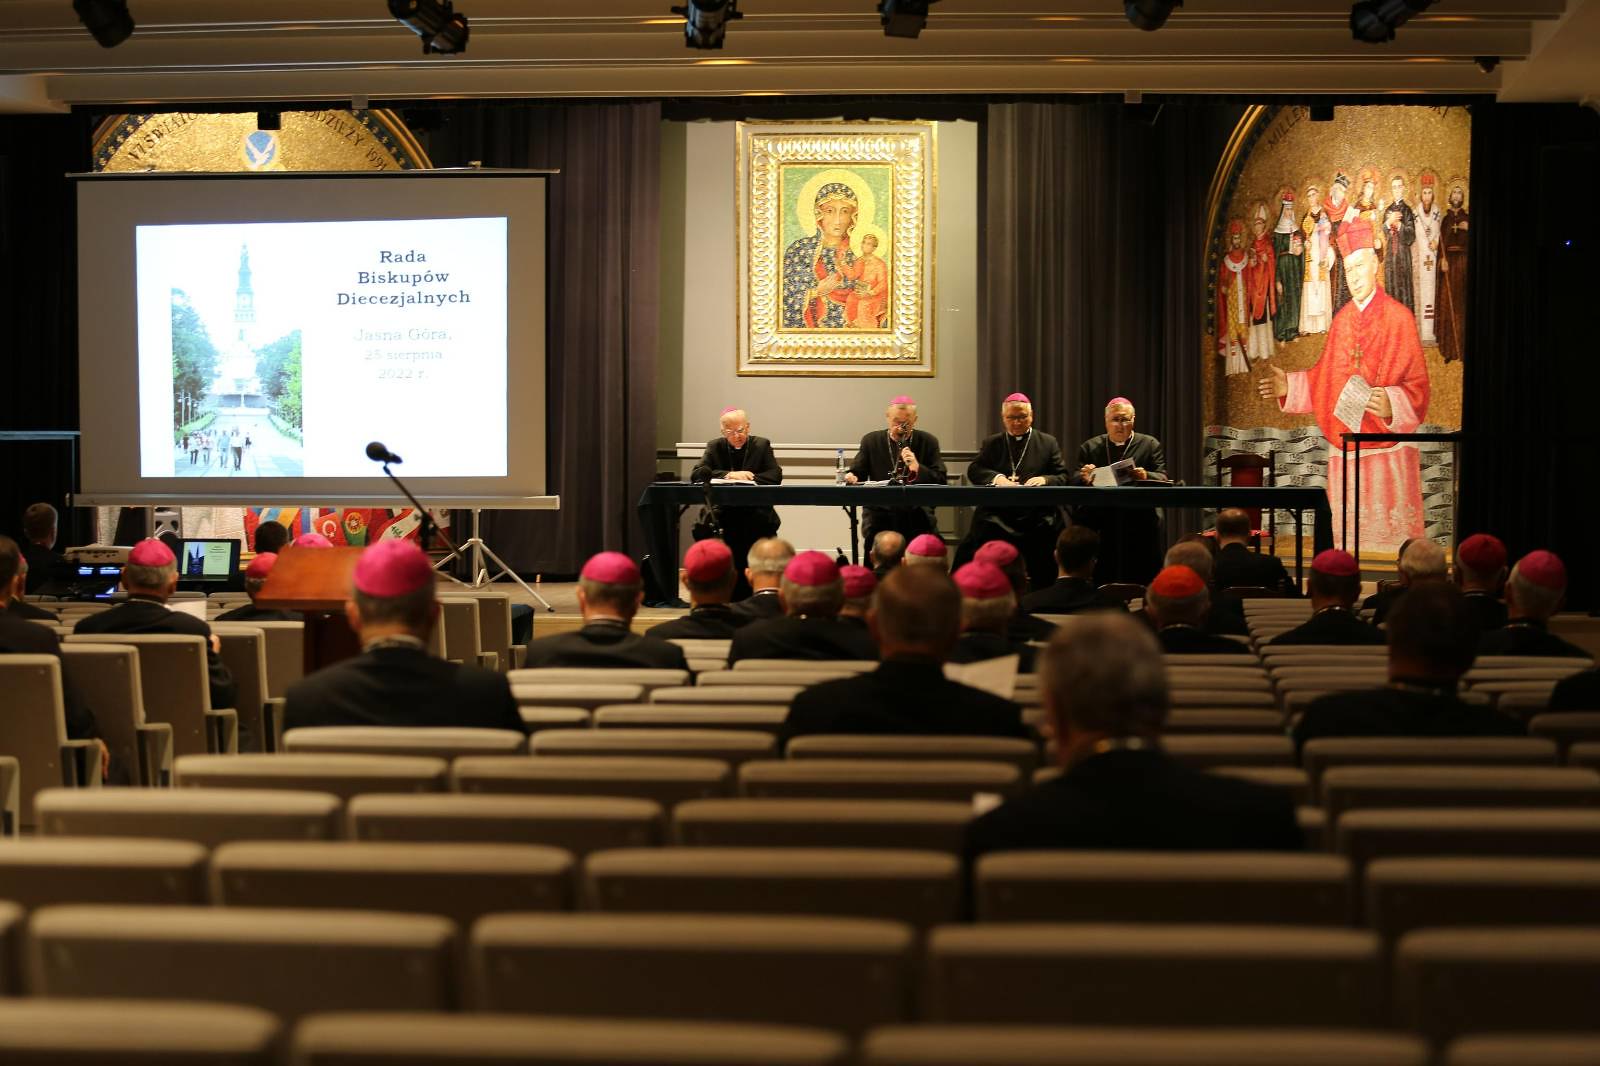 le conseil des évêques diocésains a commencé